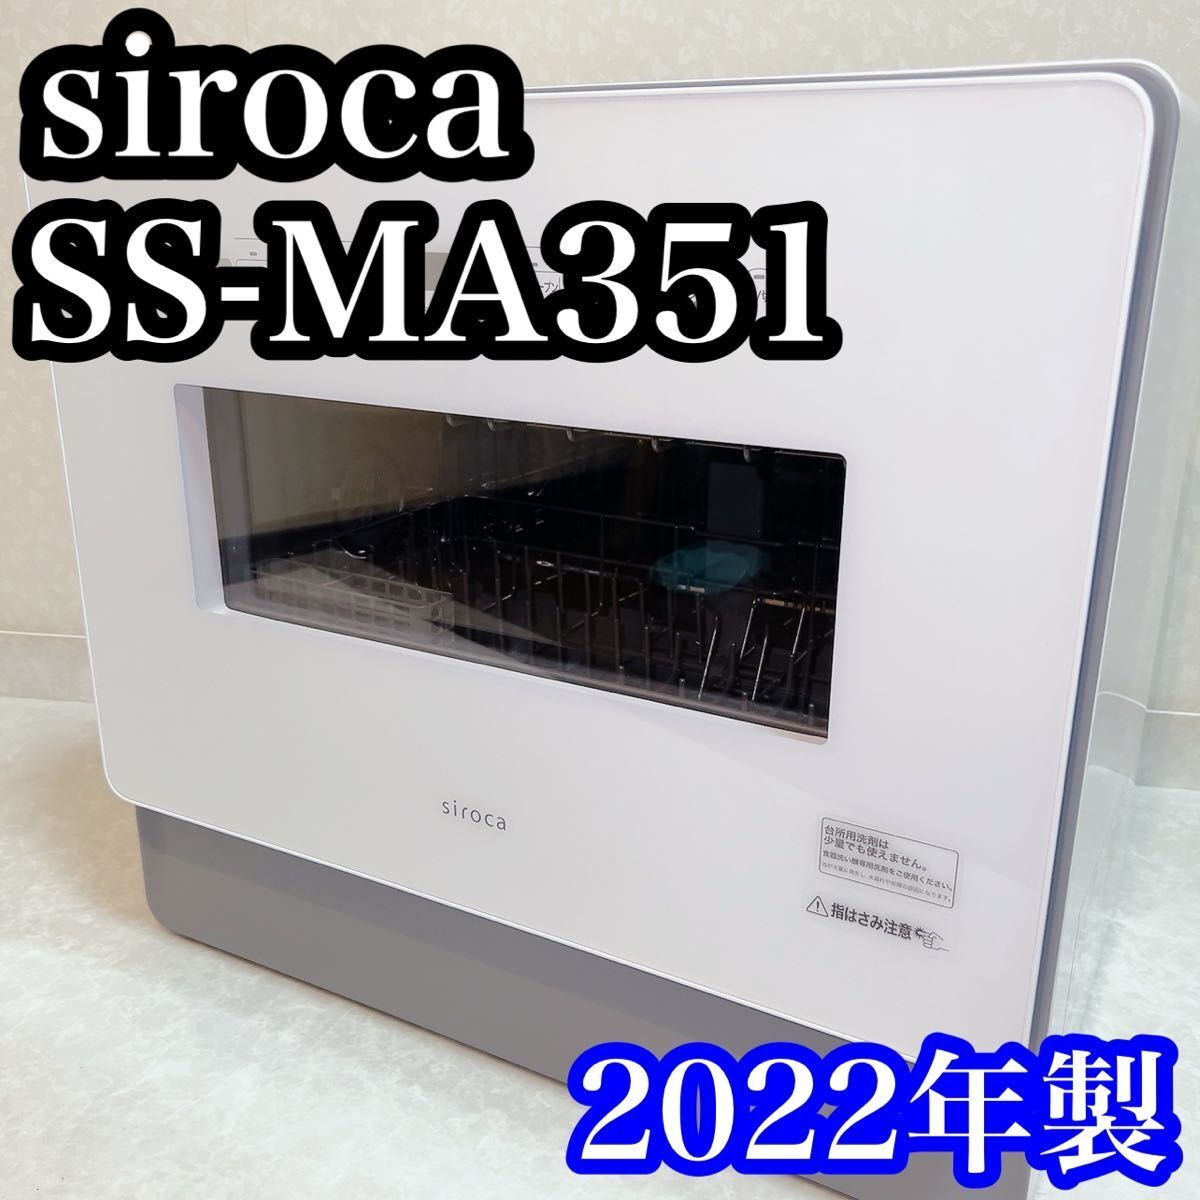 シロカ　siroca 食器洗い乾燥機SS-MA351 付属品多数！　食洗機